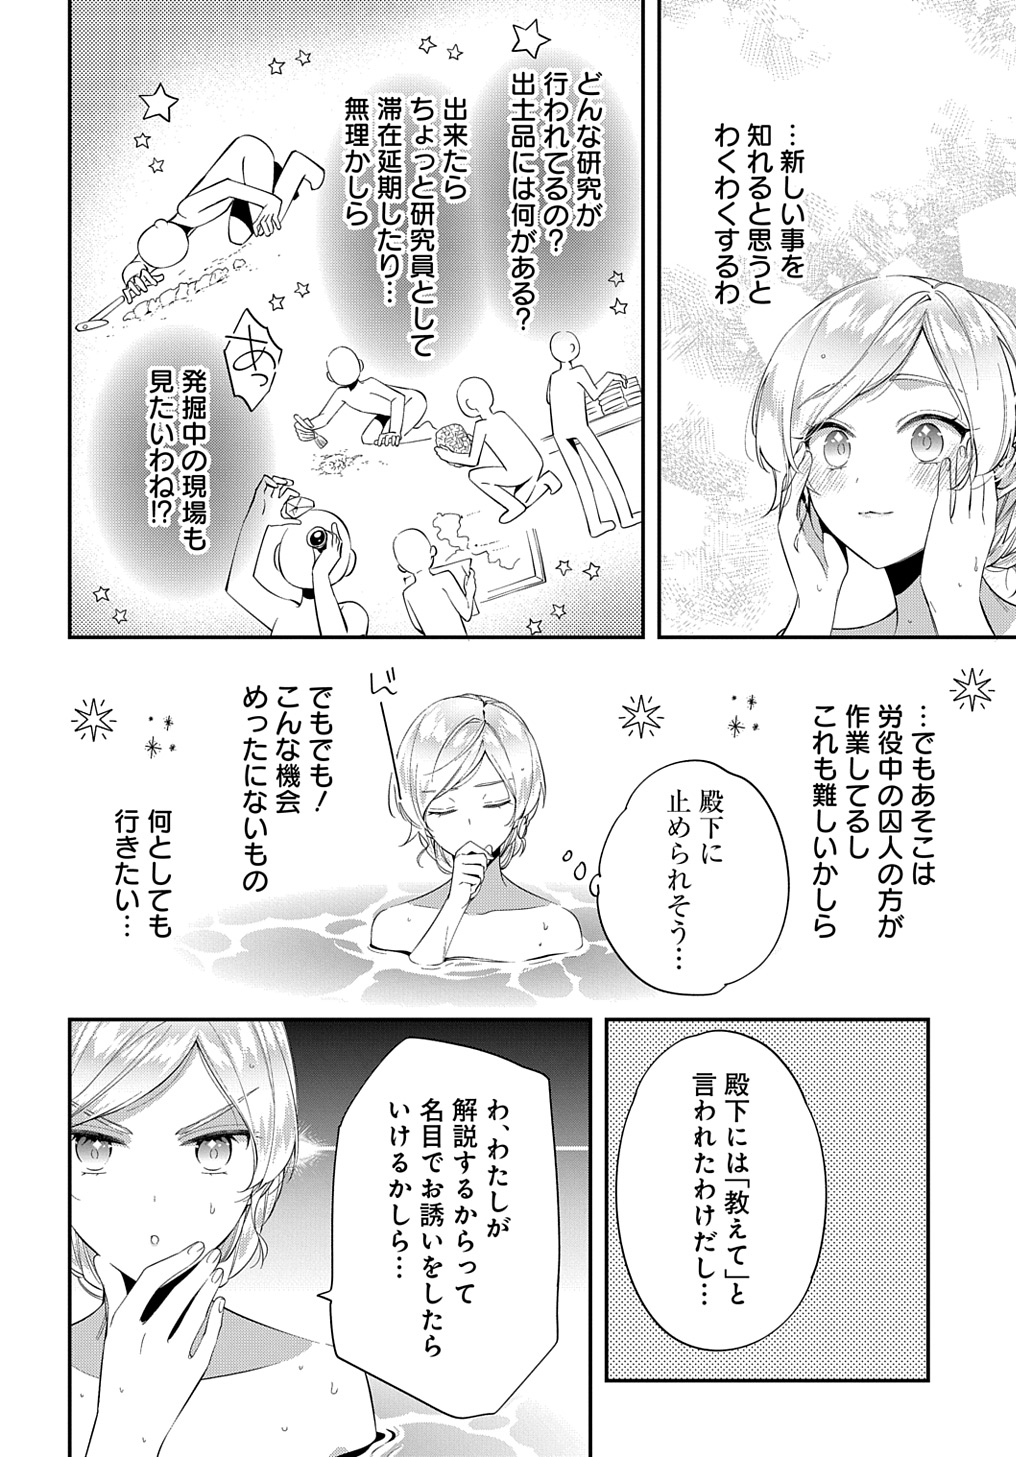 Outaishi ni Konyaku Hakisareta no de, Mou Baka no Furi wa Yameyou to Omoimasu - Chapter 23 - Page 20